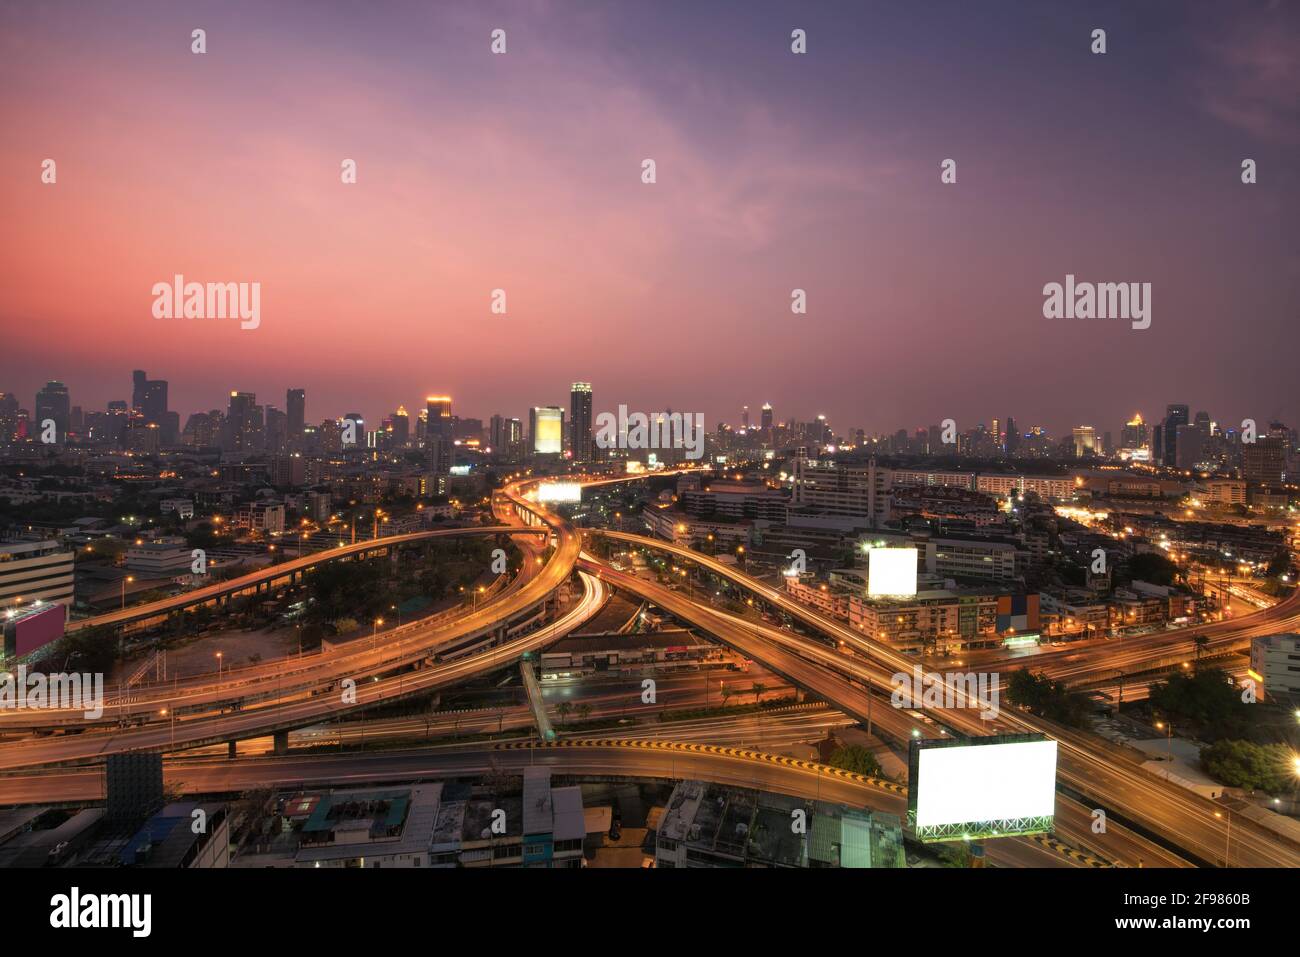 Bangkok Expressway and Highway top view, Thailand Stock Photo